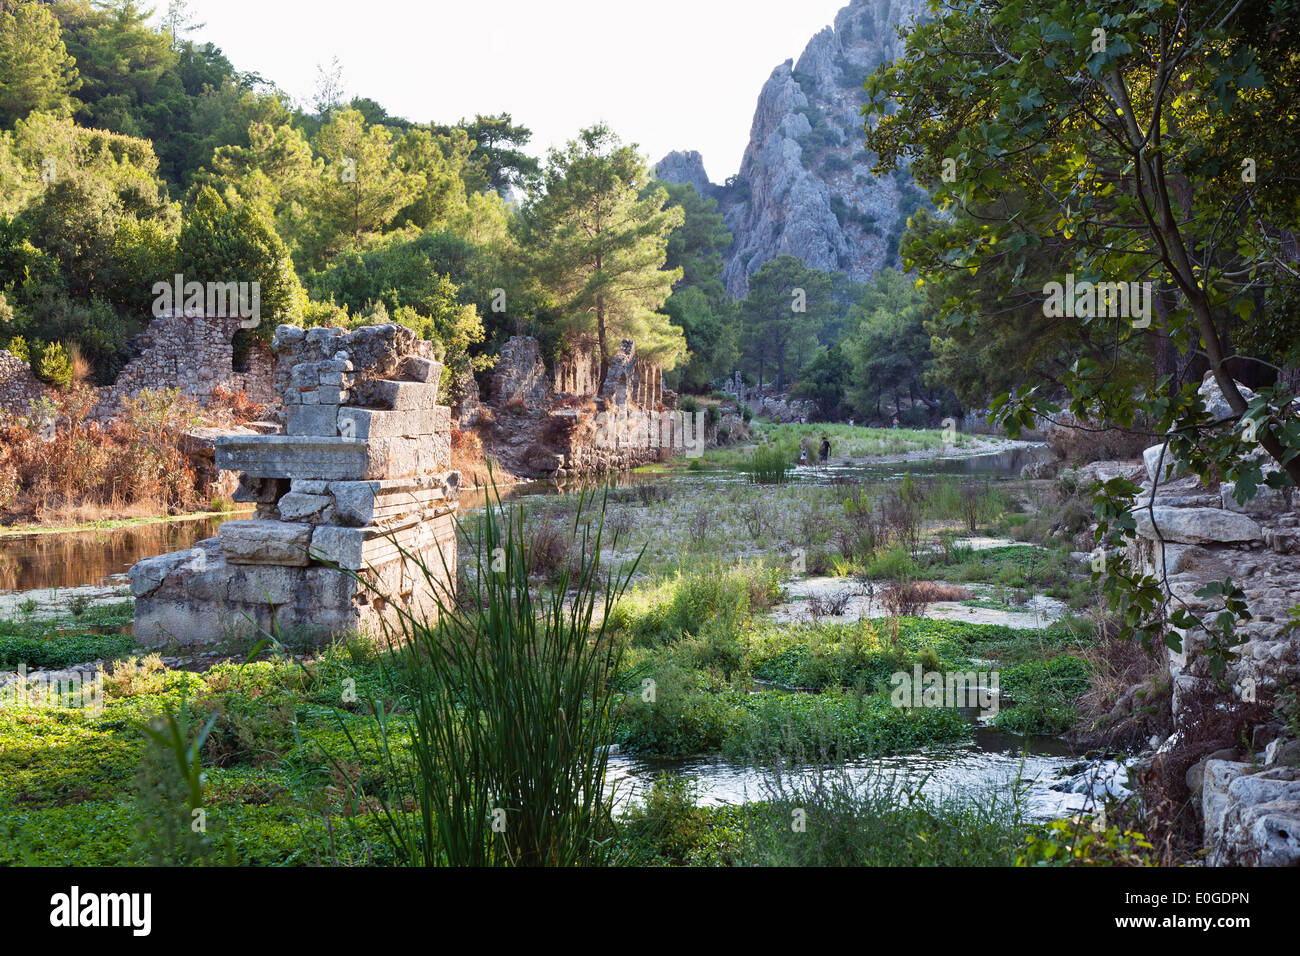 Ruines d'une basilique byzantine, Ruines de ancient Olympos, côte lycienne, Lycie, Mer Méditerranée, Turquie, Asie Banque D'Images